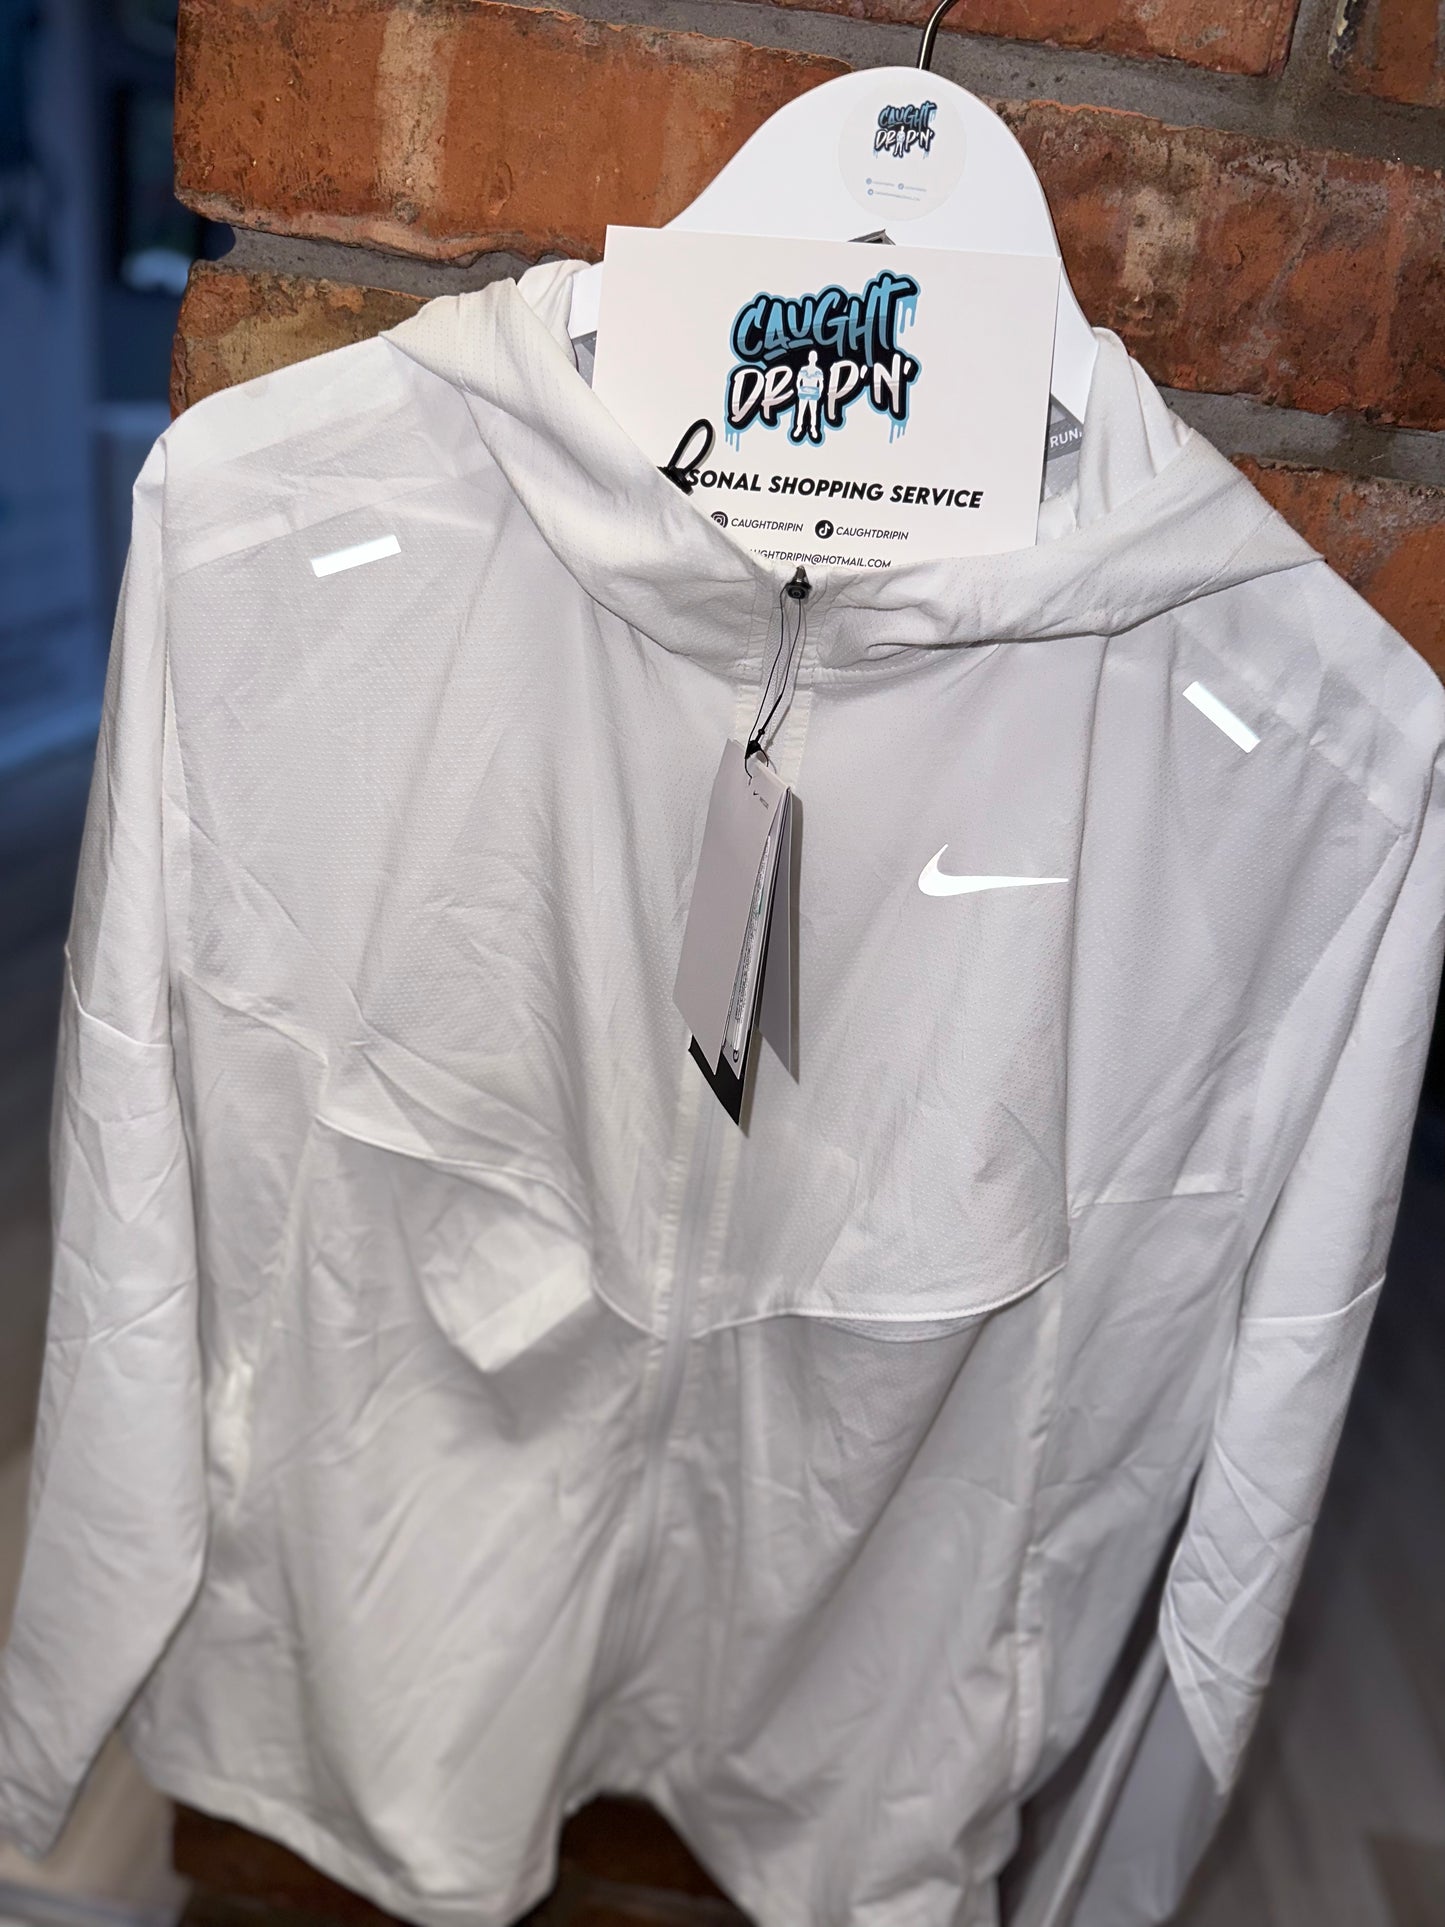 Nike Windrunner Jacket White